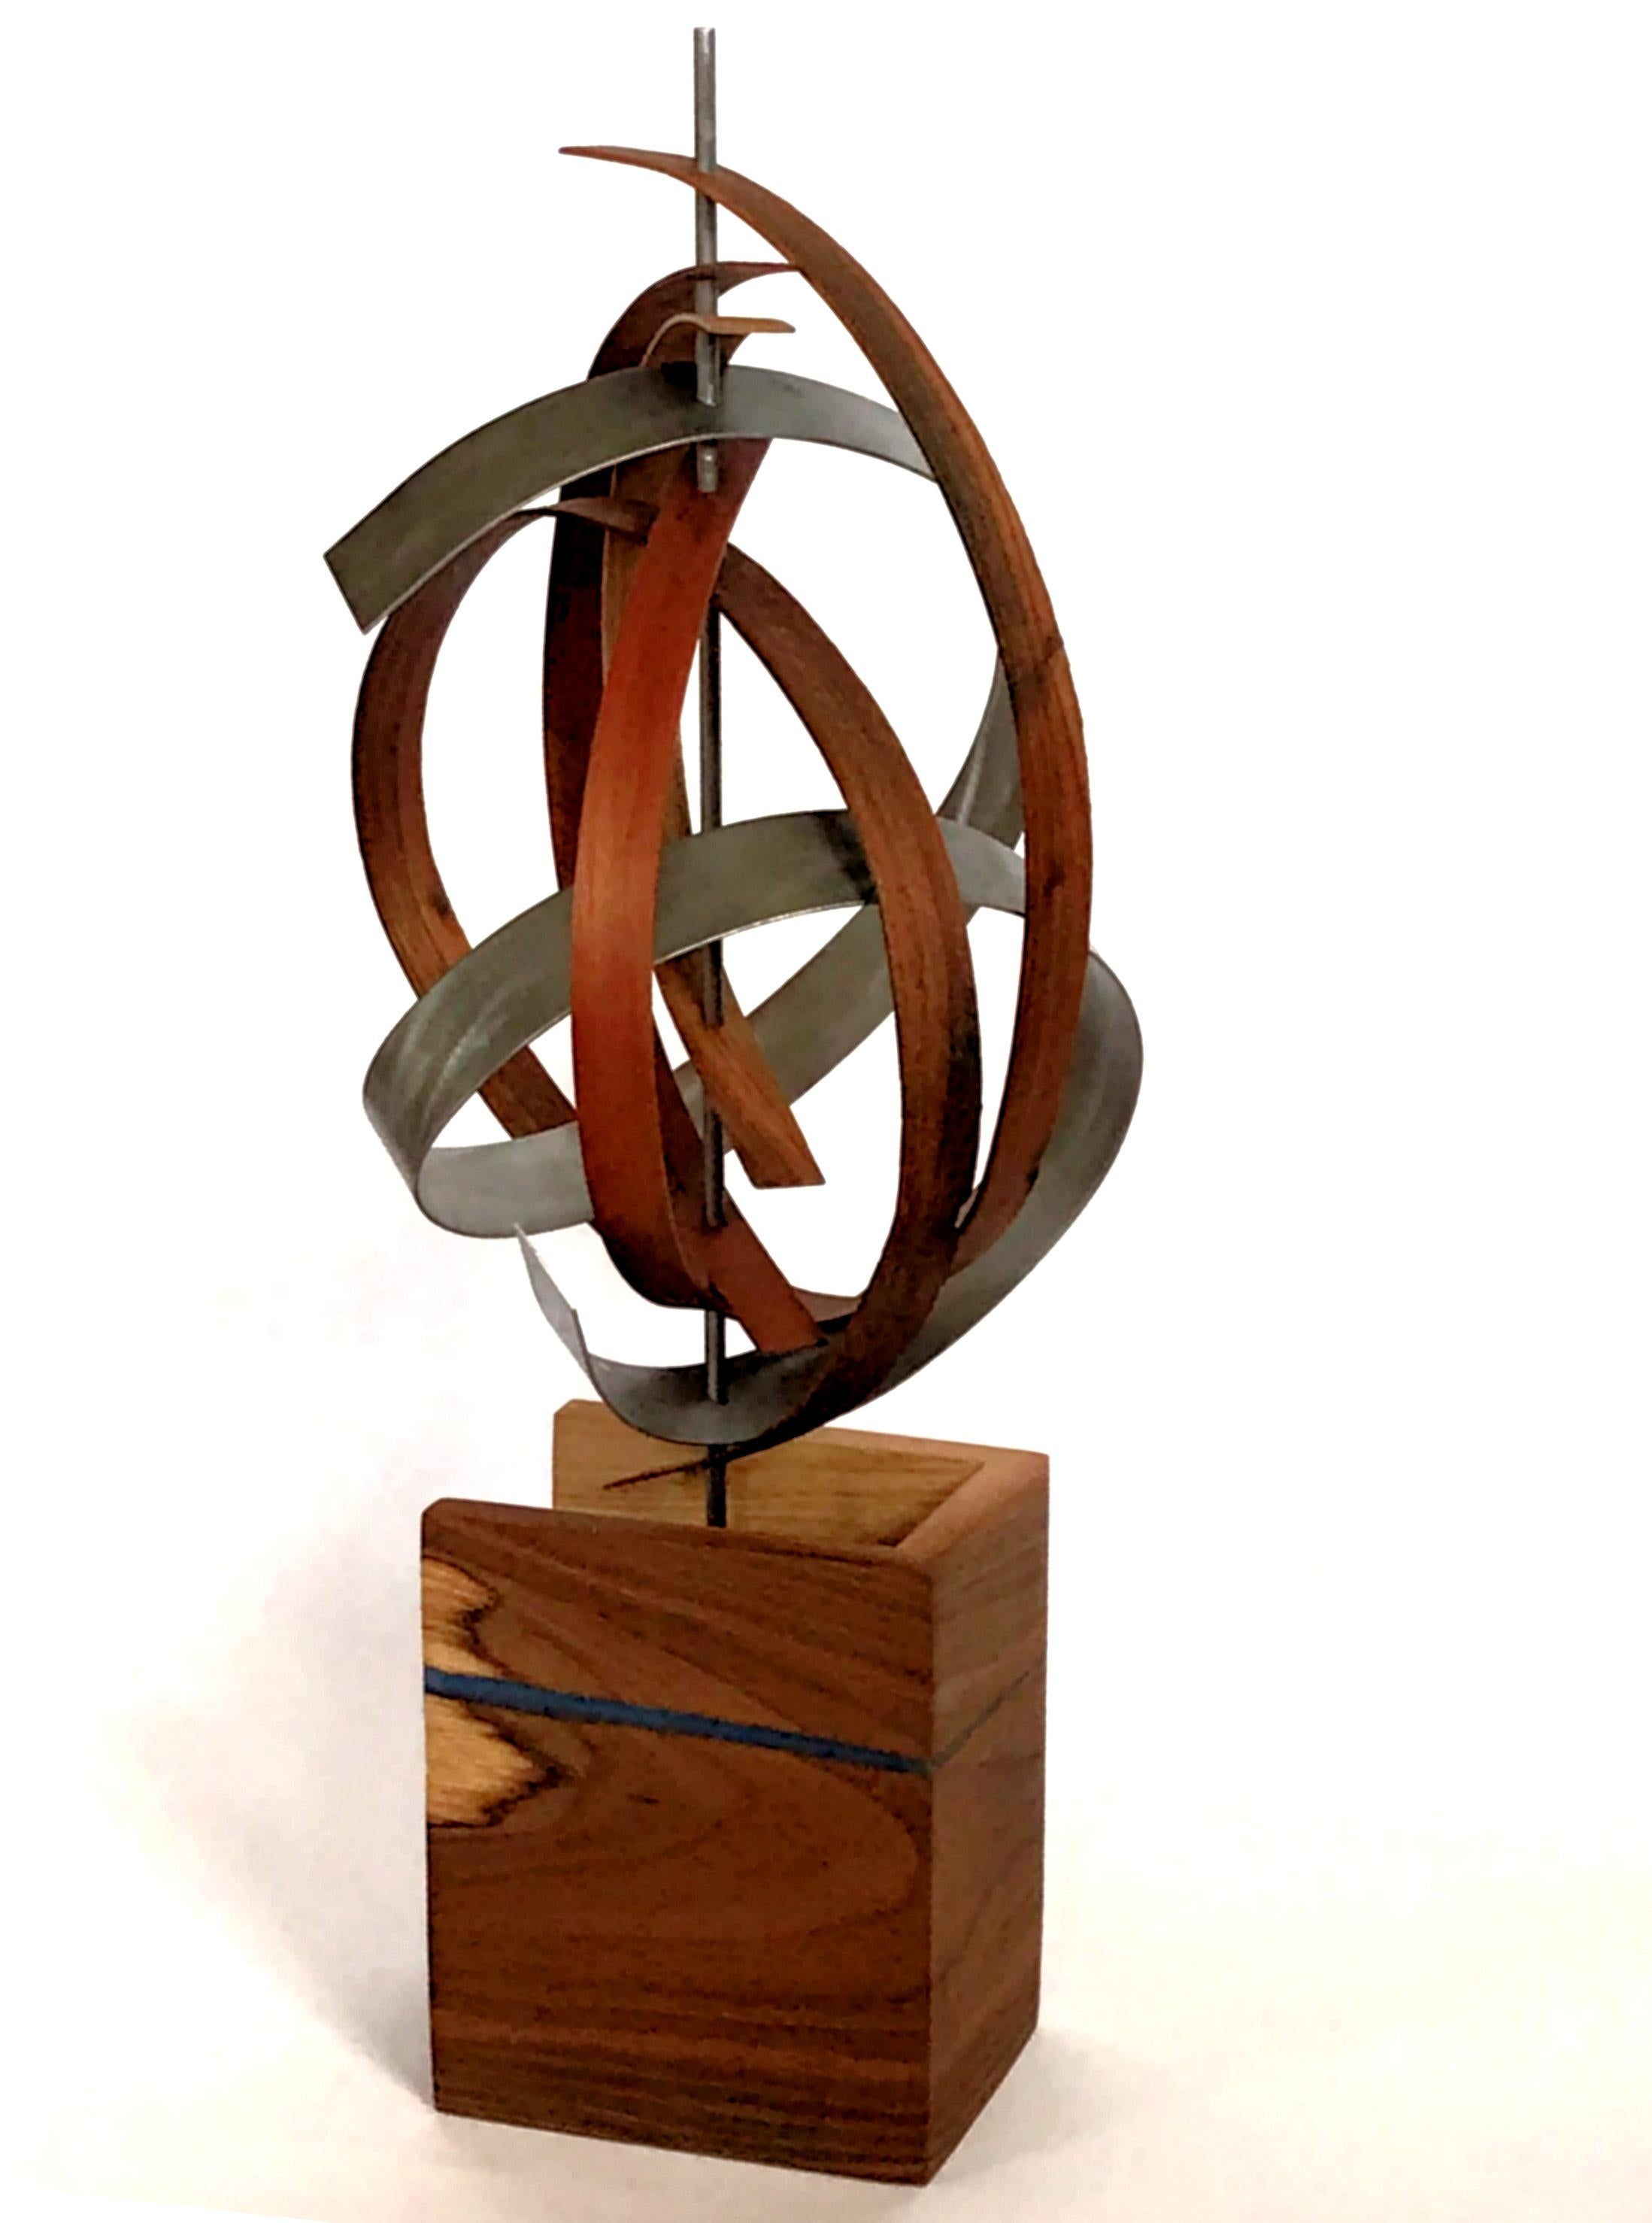 Linenkugel Modern Wood Metal Free-Standing Sculpture Original Contemporary Art 2